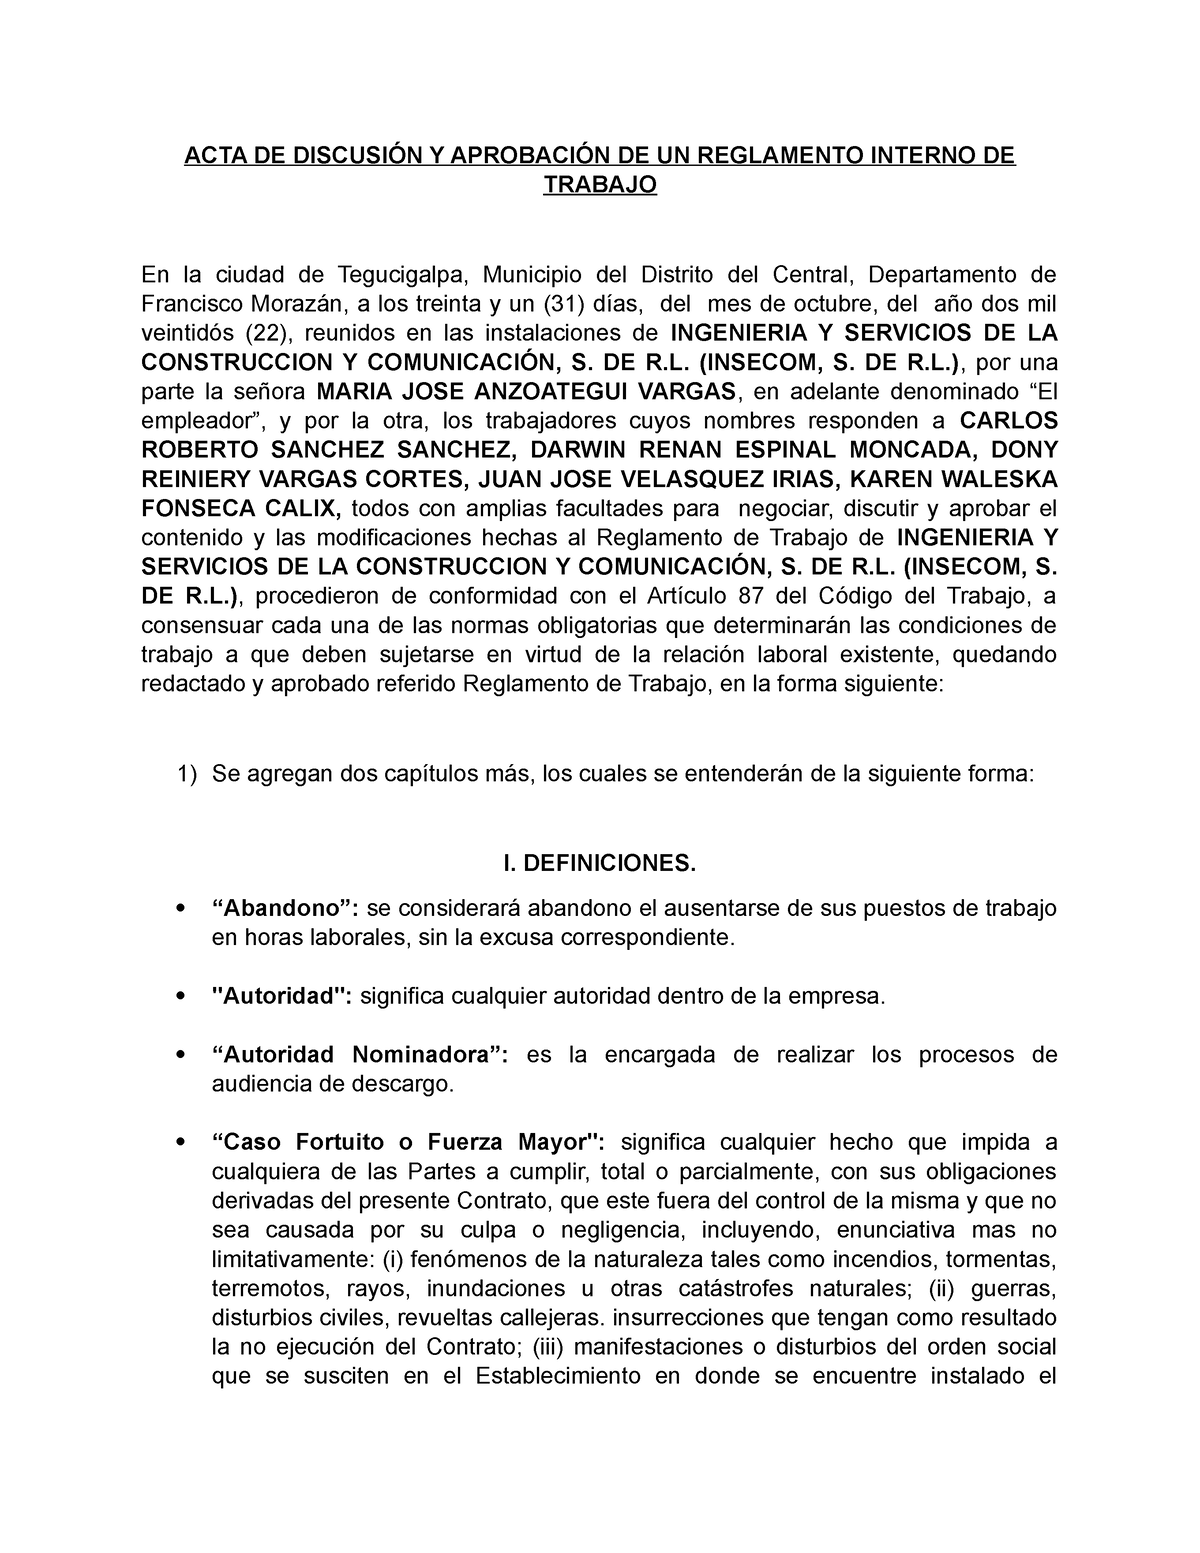 Acta Aprobacion De Reglamento Insecom Acta De DiscusiÓn Y AprobaciÓn De Un Reglamento Interno 8920